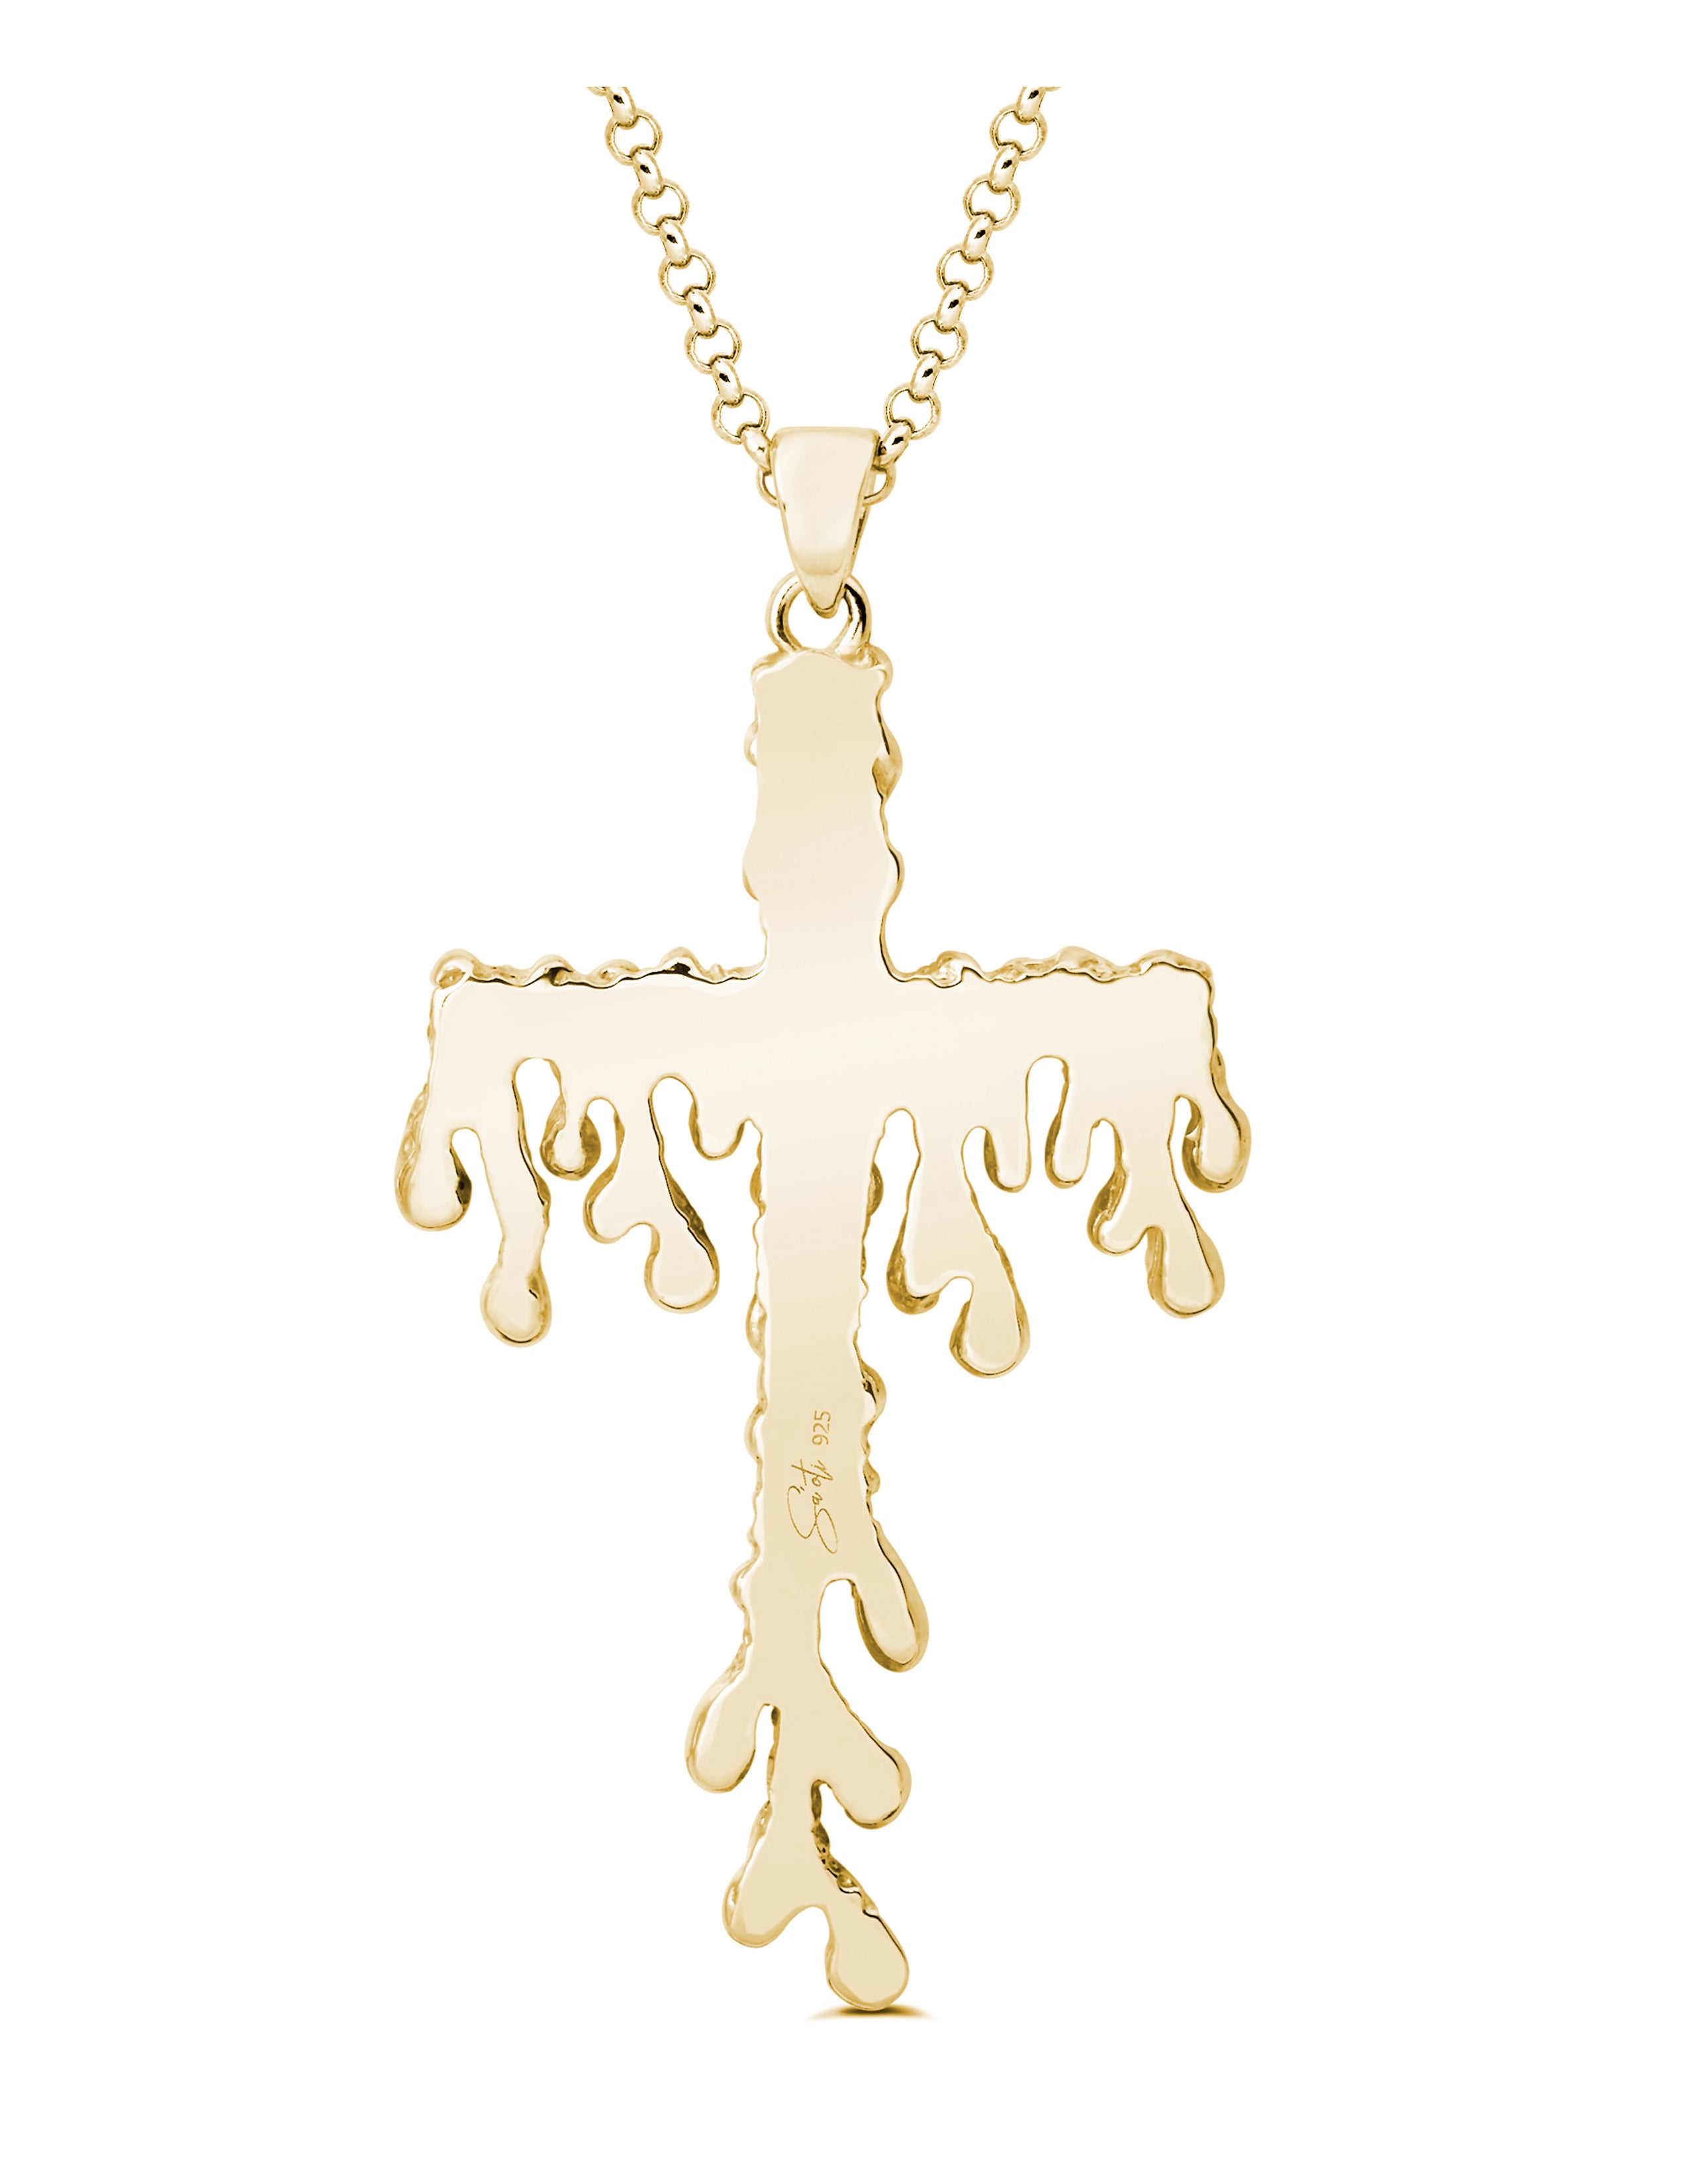 14k Diamond Cross Necklace Bezelled - Large - KAMARIA